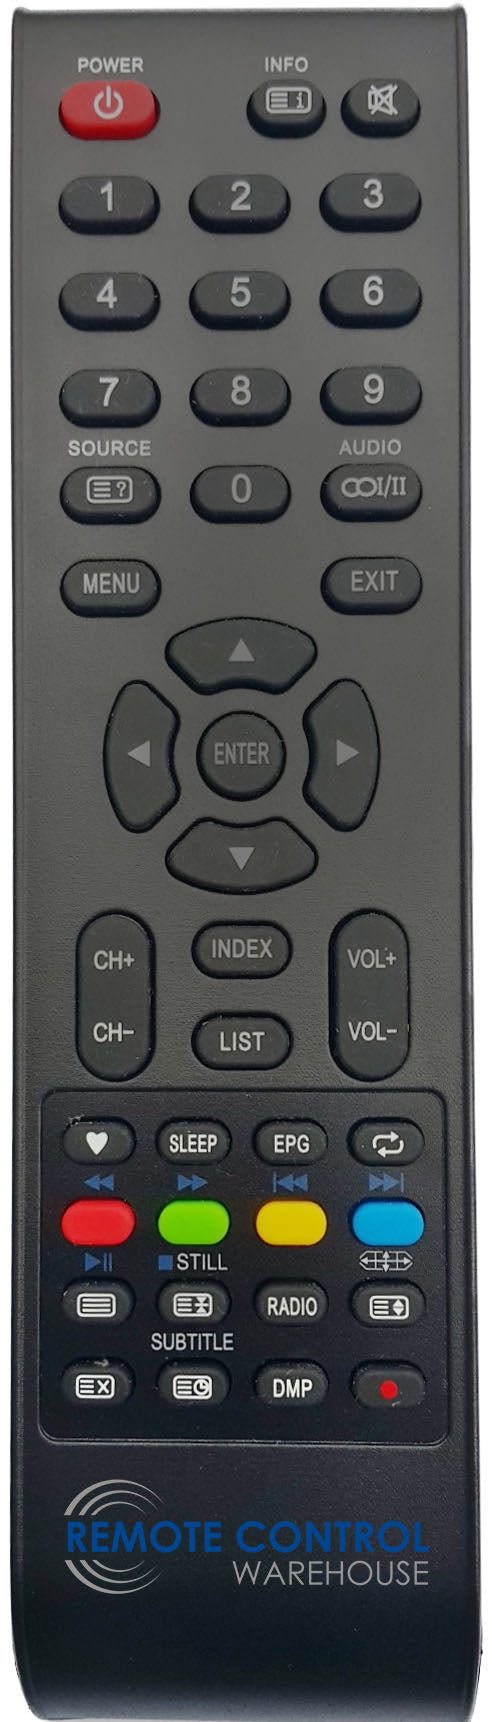 CHIQ L43G4 TV Remote Control